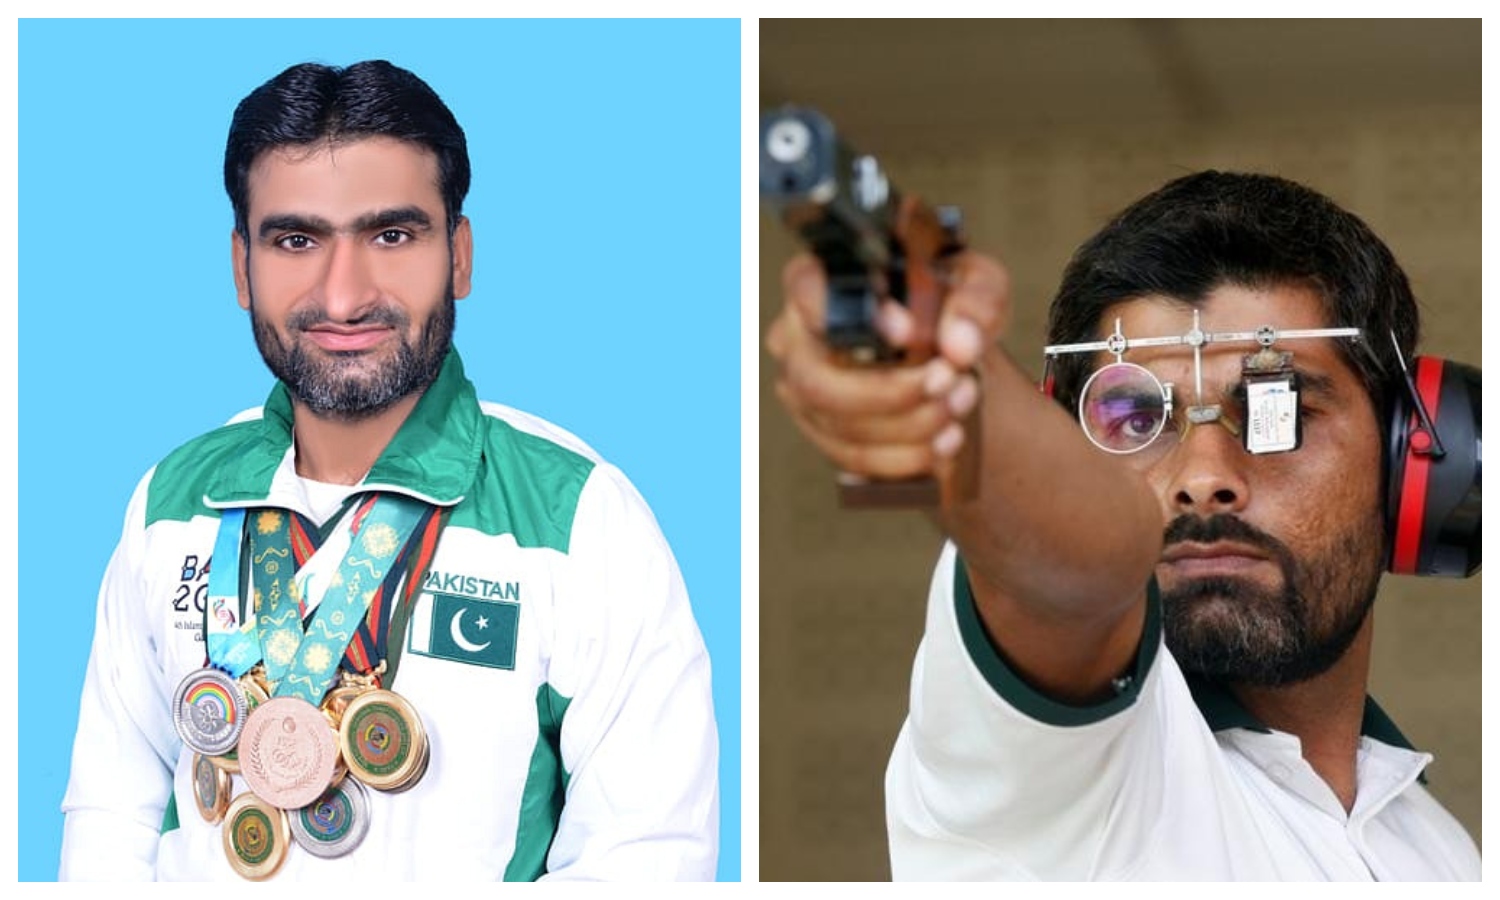 پاکستان کی نمائندگی کرنے والے نشانہ بازوں نے ٹورنامنٹ میں توقع سے بہتر کارکردگی دکھائی  —فوٹو:فائل